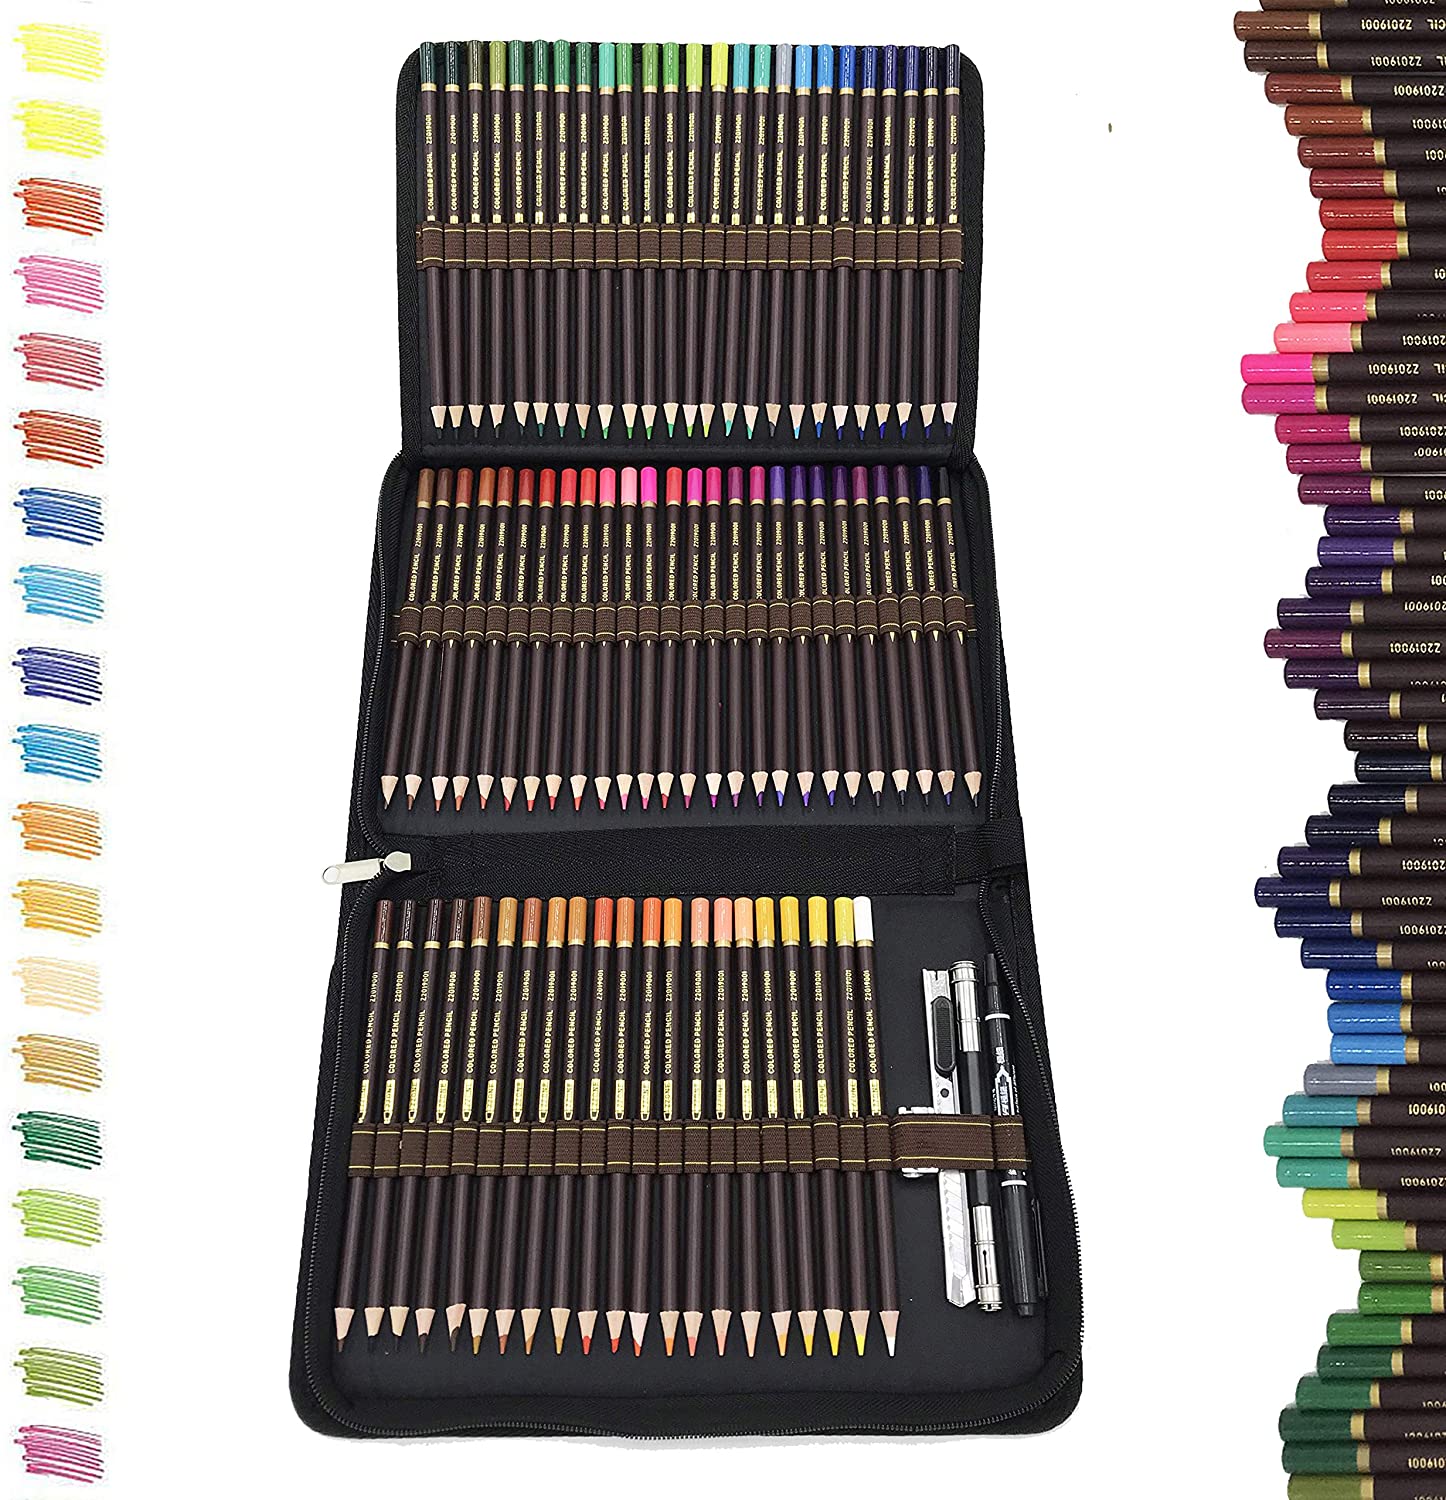 Professionale Matite Colorate Kit per Schizzo e Disegno Artistico